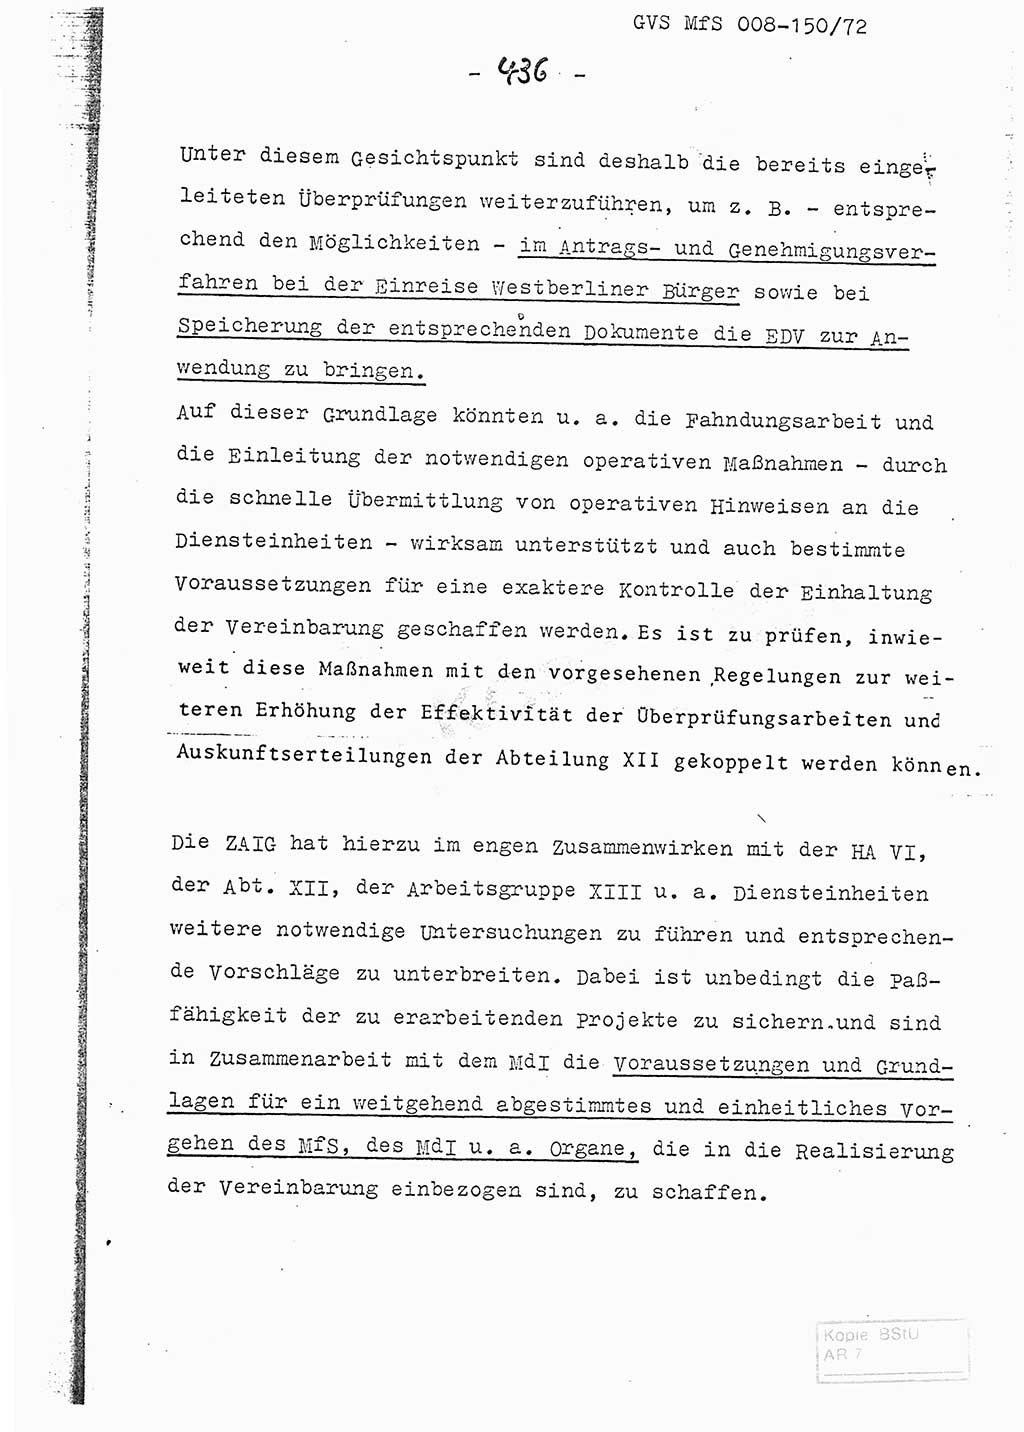 Referat (Entwurf) des Genossen Minister (Generaloberst Erich Mielke) auf der Dienstkonferenz 1972, Ministerium für Staatssicherheit (MfS) [Deutsche Demokratische Republik (DDR)], Der Minister, Geheime Verschlußsache (GVS) 008-150/72, Berlin 25.2.1972, Seite 436 (Ref. Entw. DK MfS DDR Min. GVS 008-150/72 1972, S. 436)